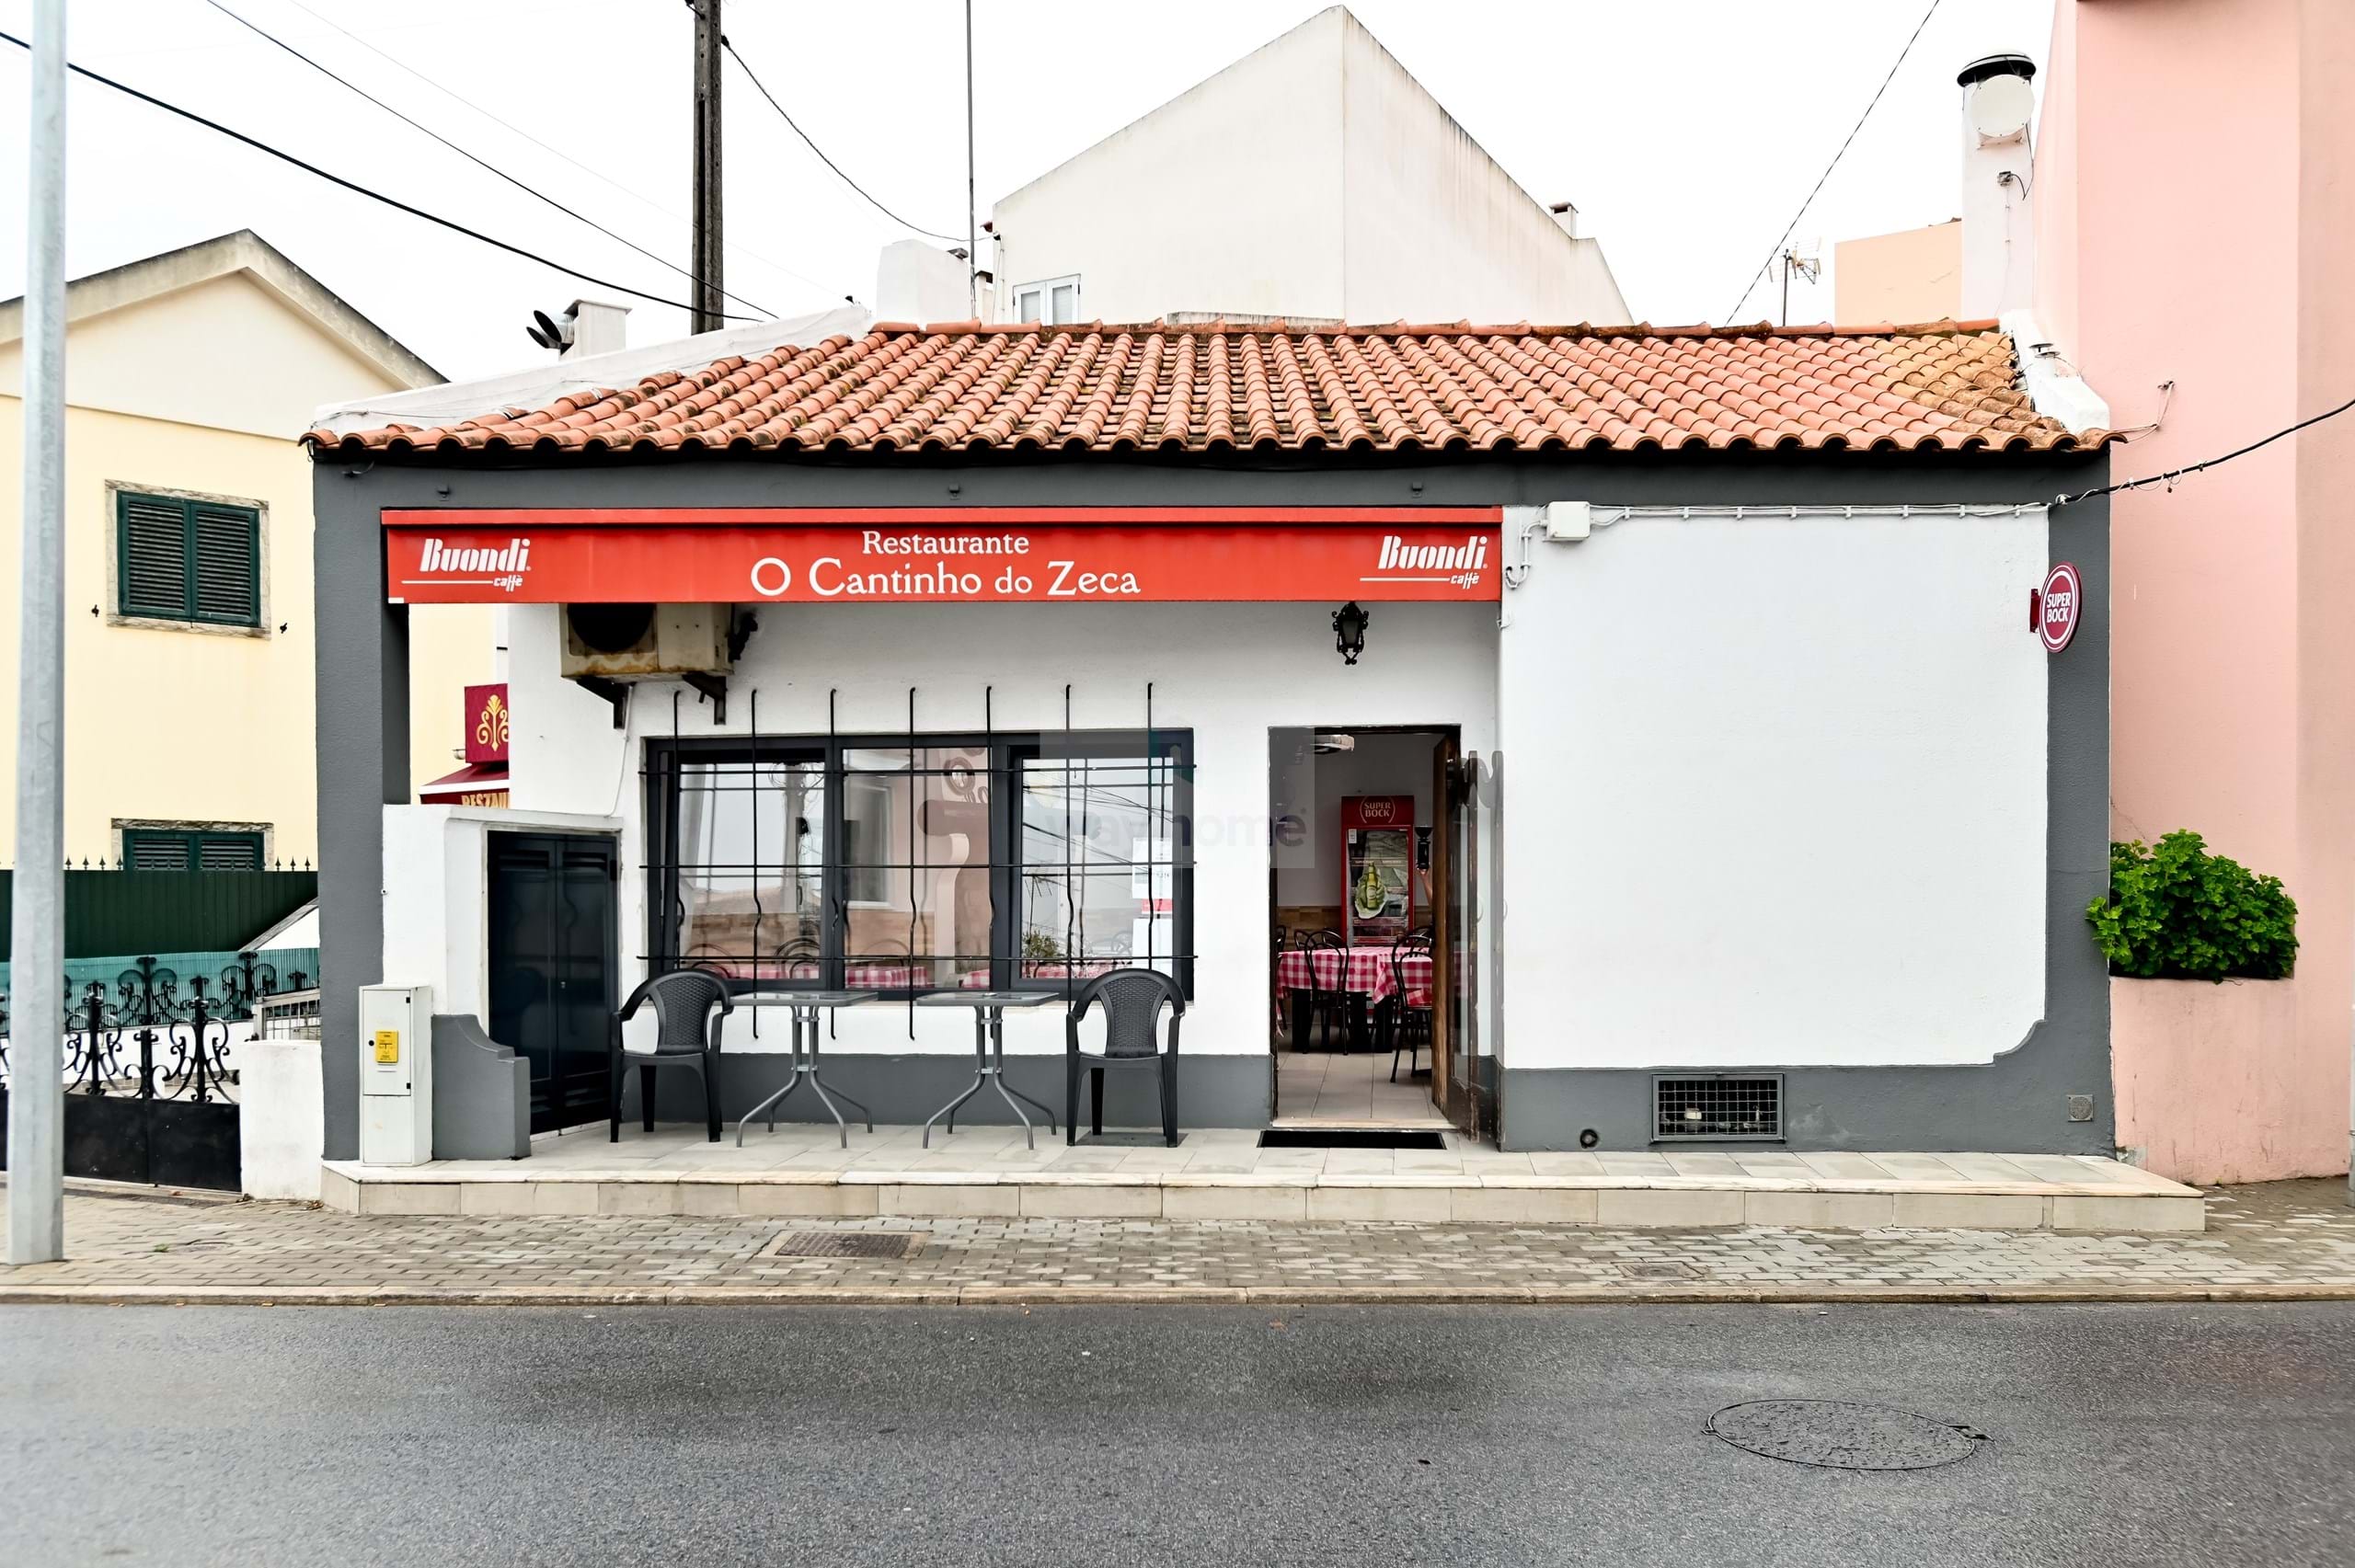 Venda - Cascais - São Domingos de Rana - Restaurante para venda | Negócio Ativo há mais de 30 anos | Abóboda | São Domingos de Rana